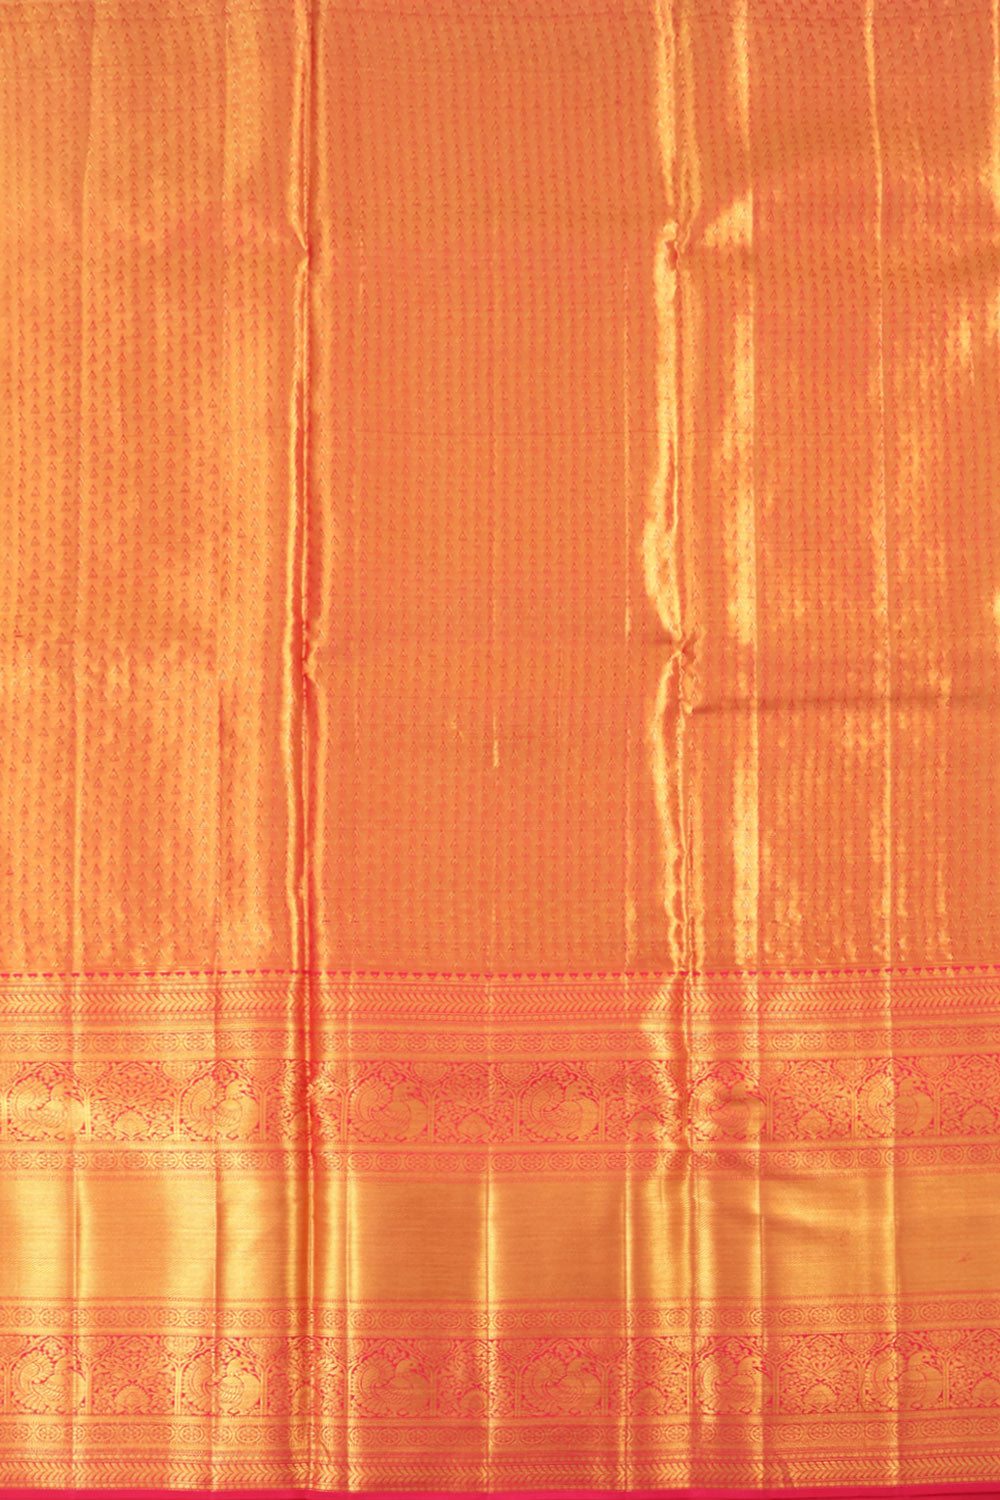 Turmeric Yellow Kanjivaram Tissue Pattu Pavadai Material 10059614